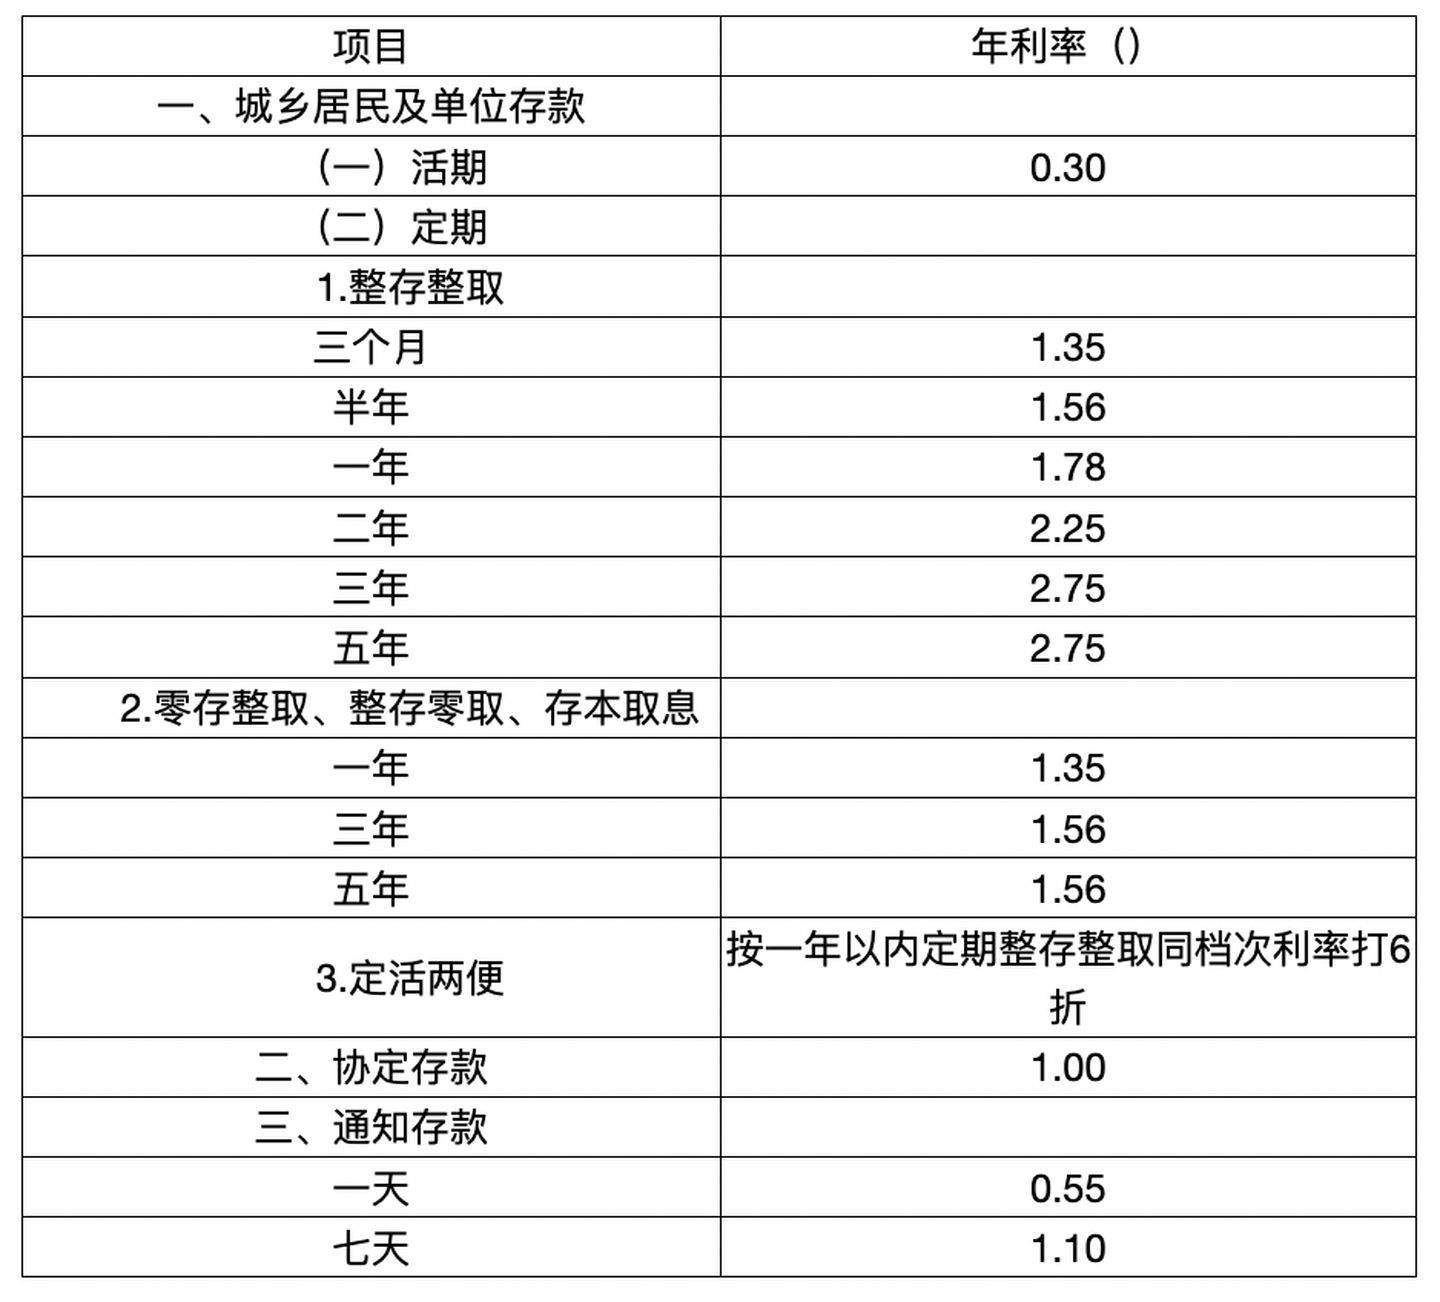 香港银行 美元定期利率_中国银行2013一年期定期存款利率美元_中国银行2013一年期定期存款利率美元